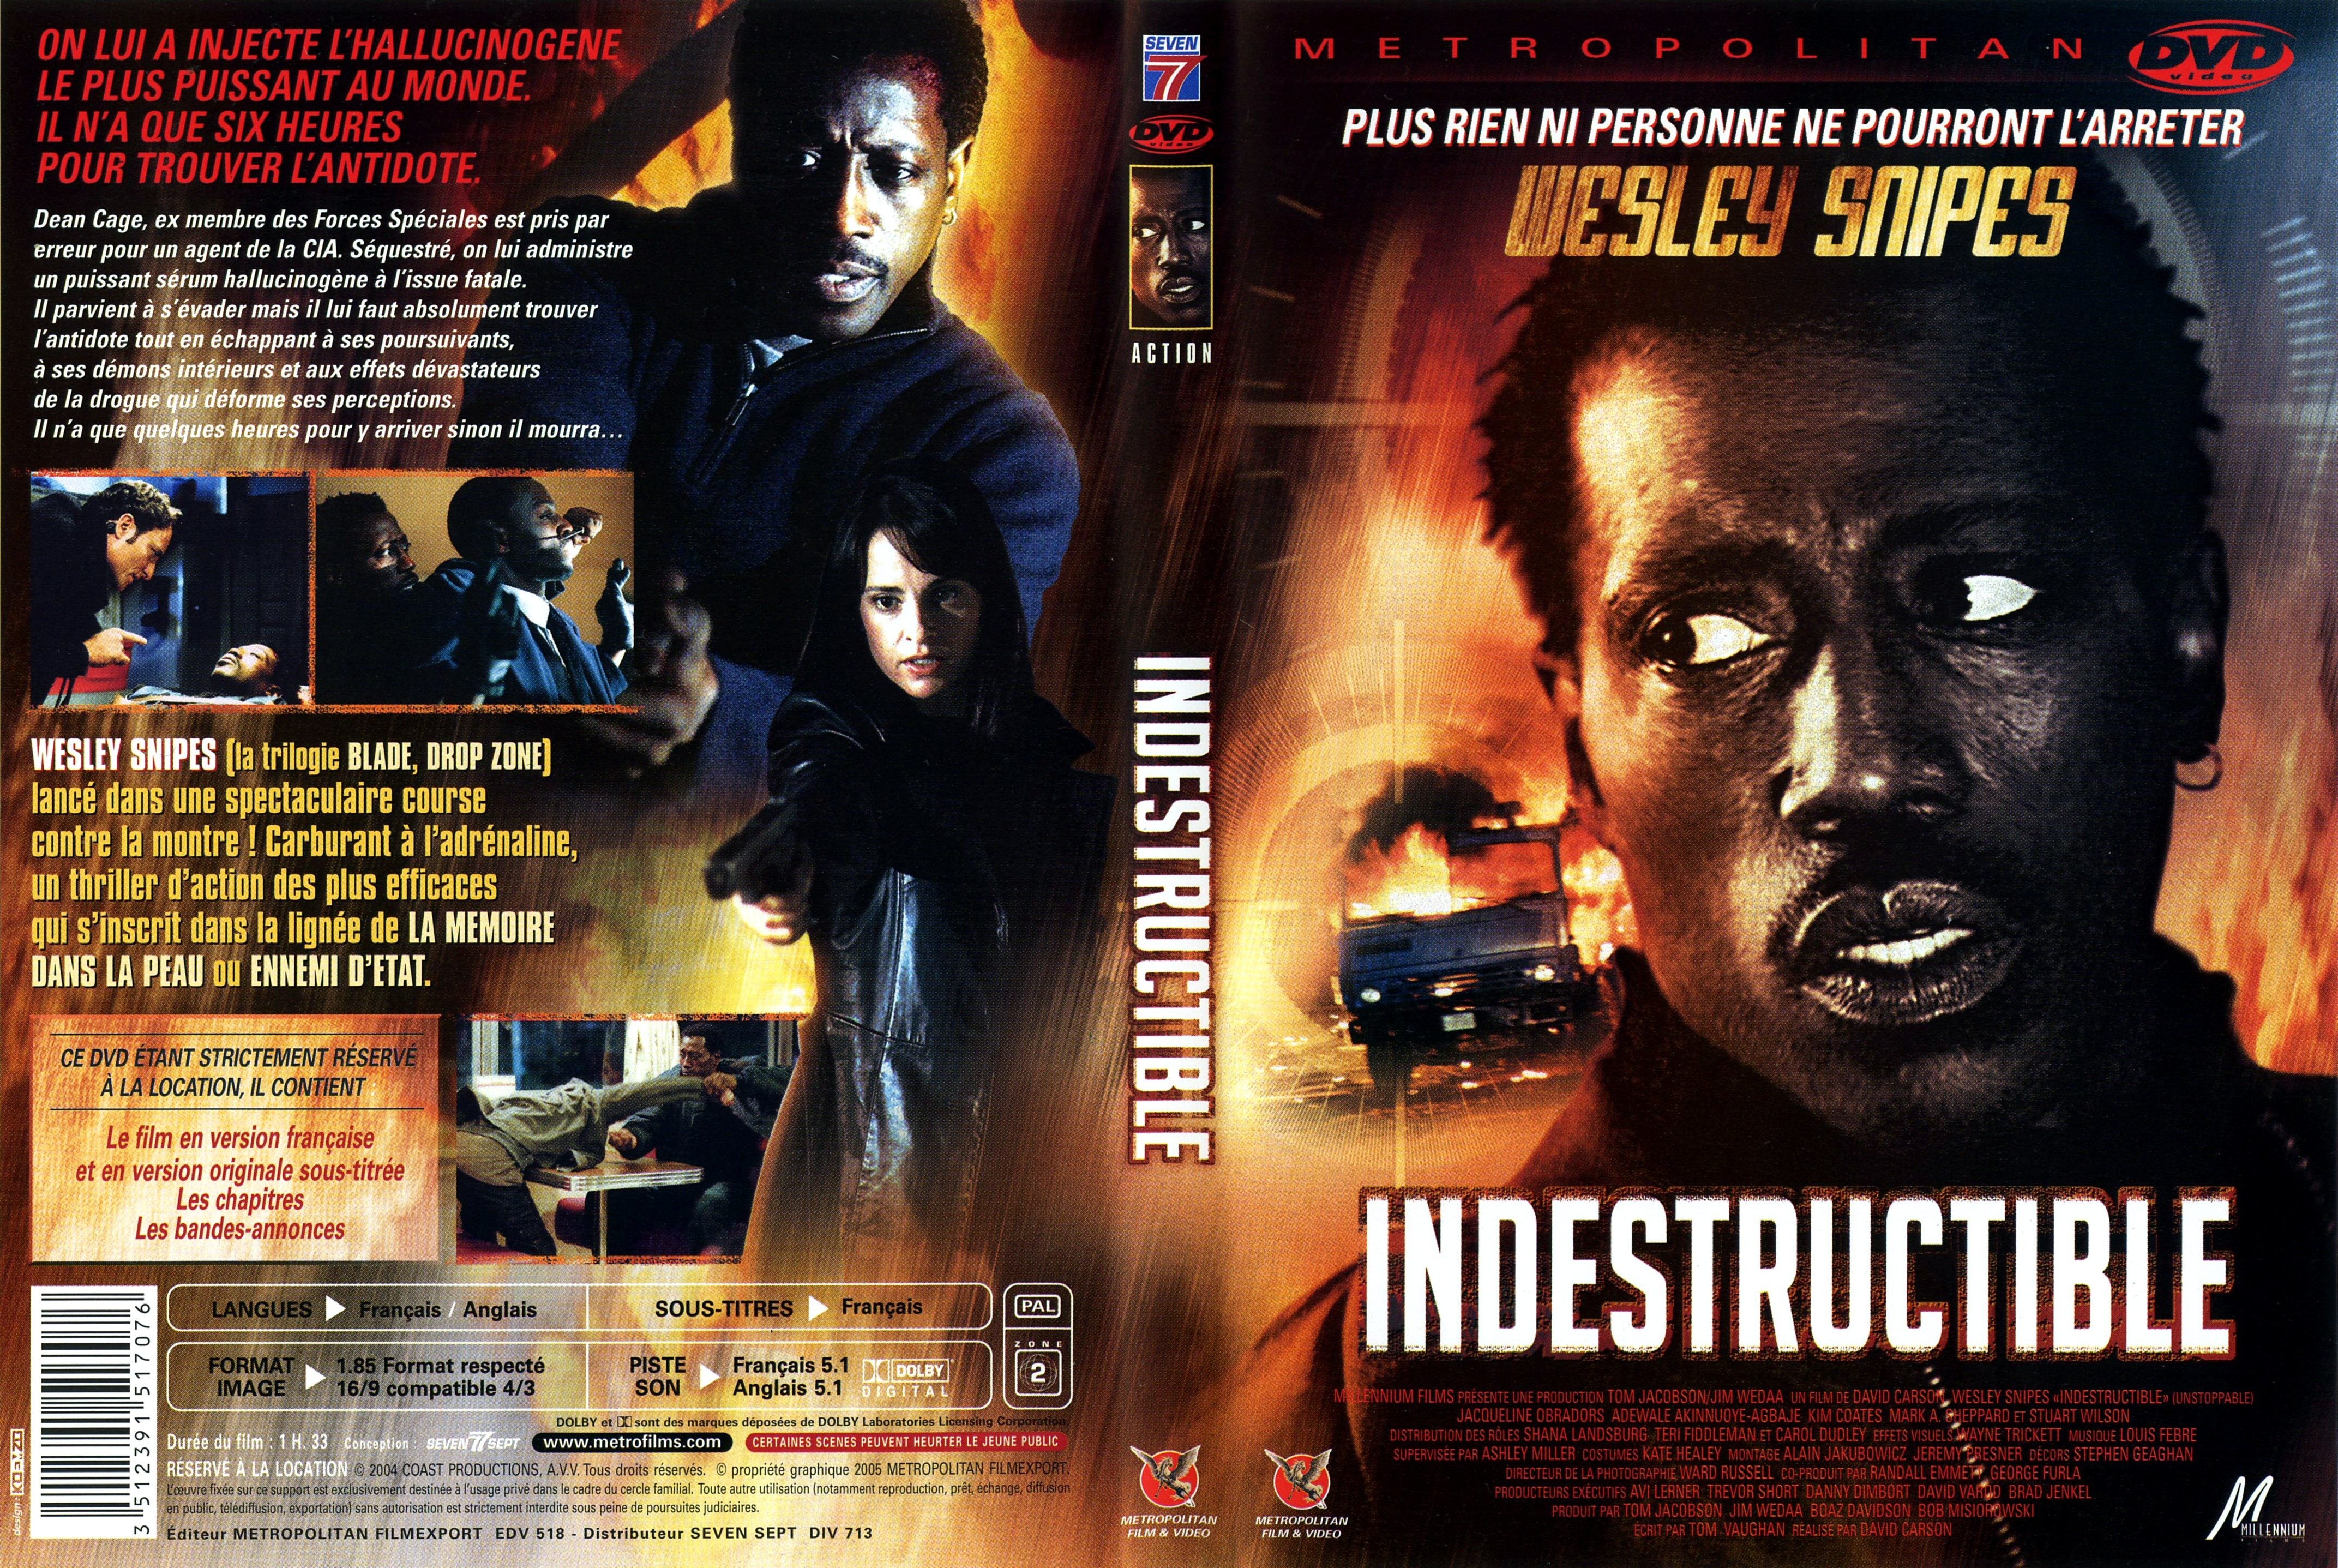 Jaquette DVD Indestructible